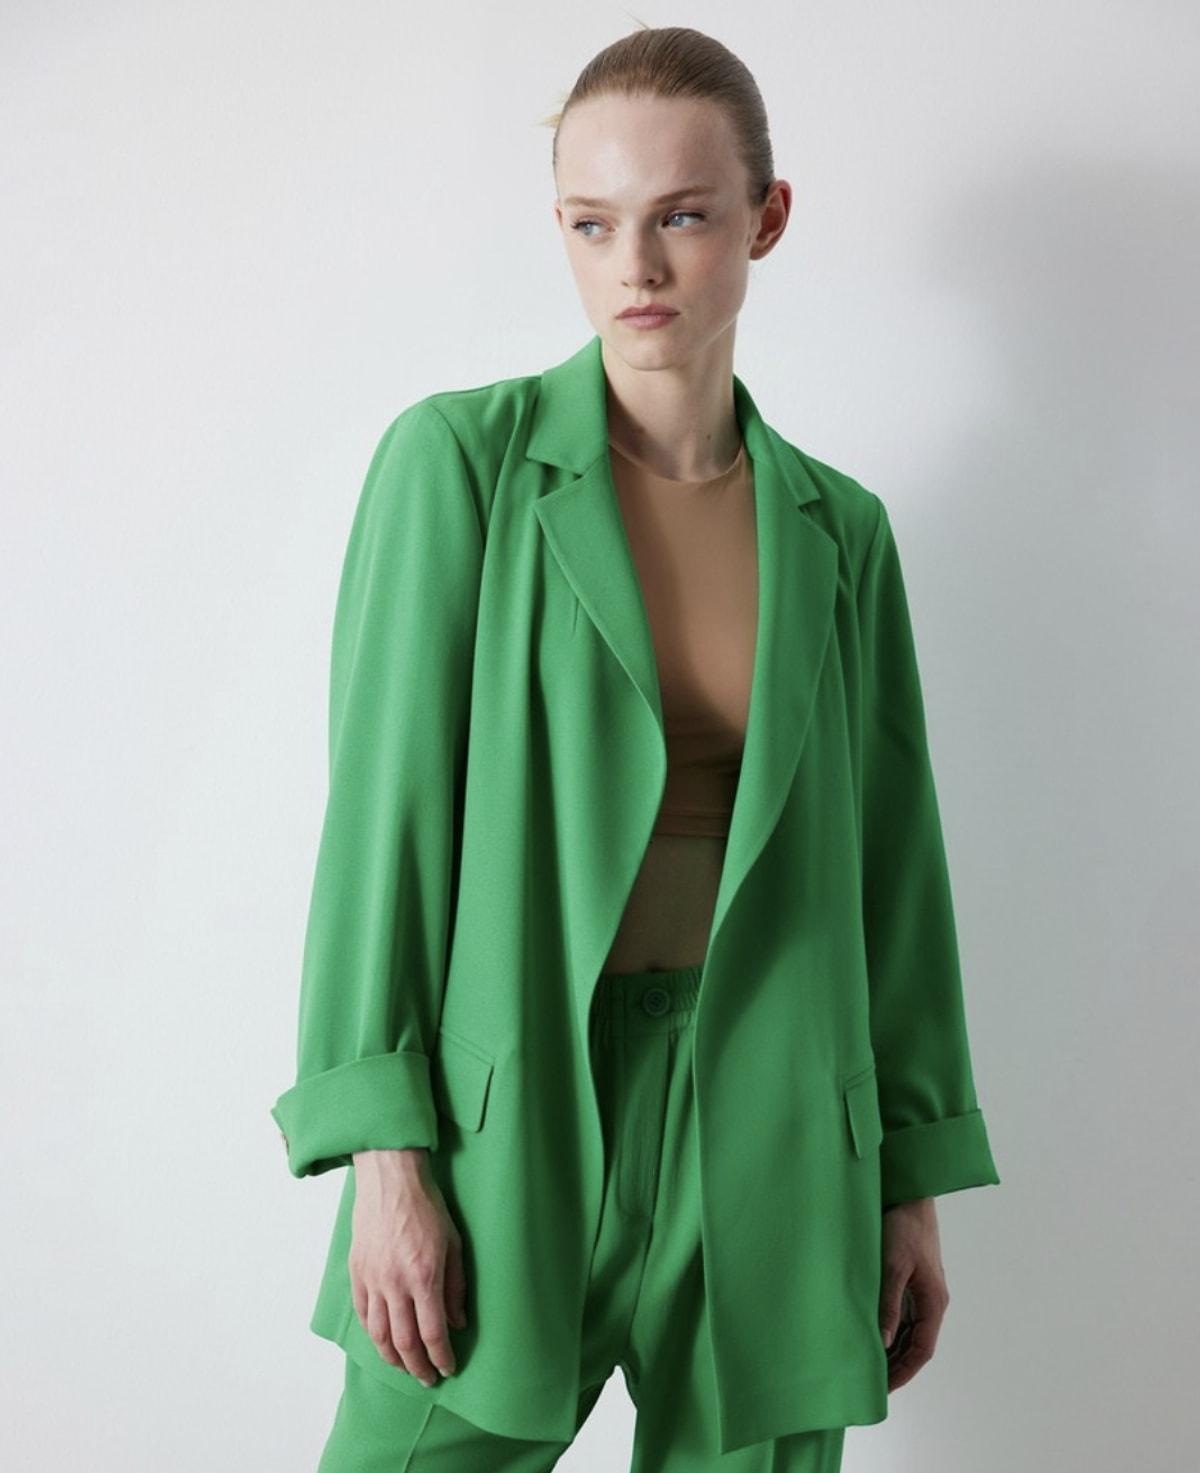 İpekyol'un büyüleyici dökümlü blazer yeşil ceketi, gardırobunuzdaki en şık parçalardan biri olmaya aday.